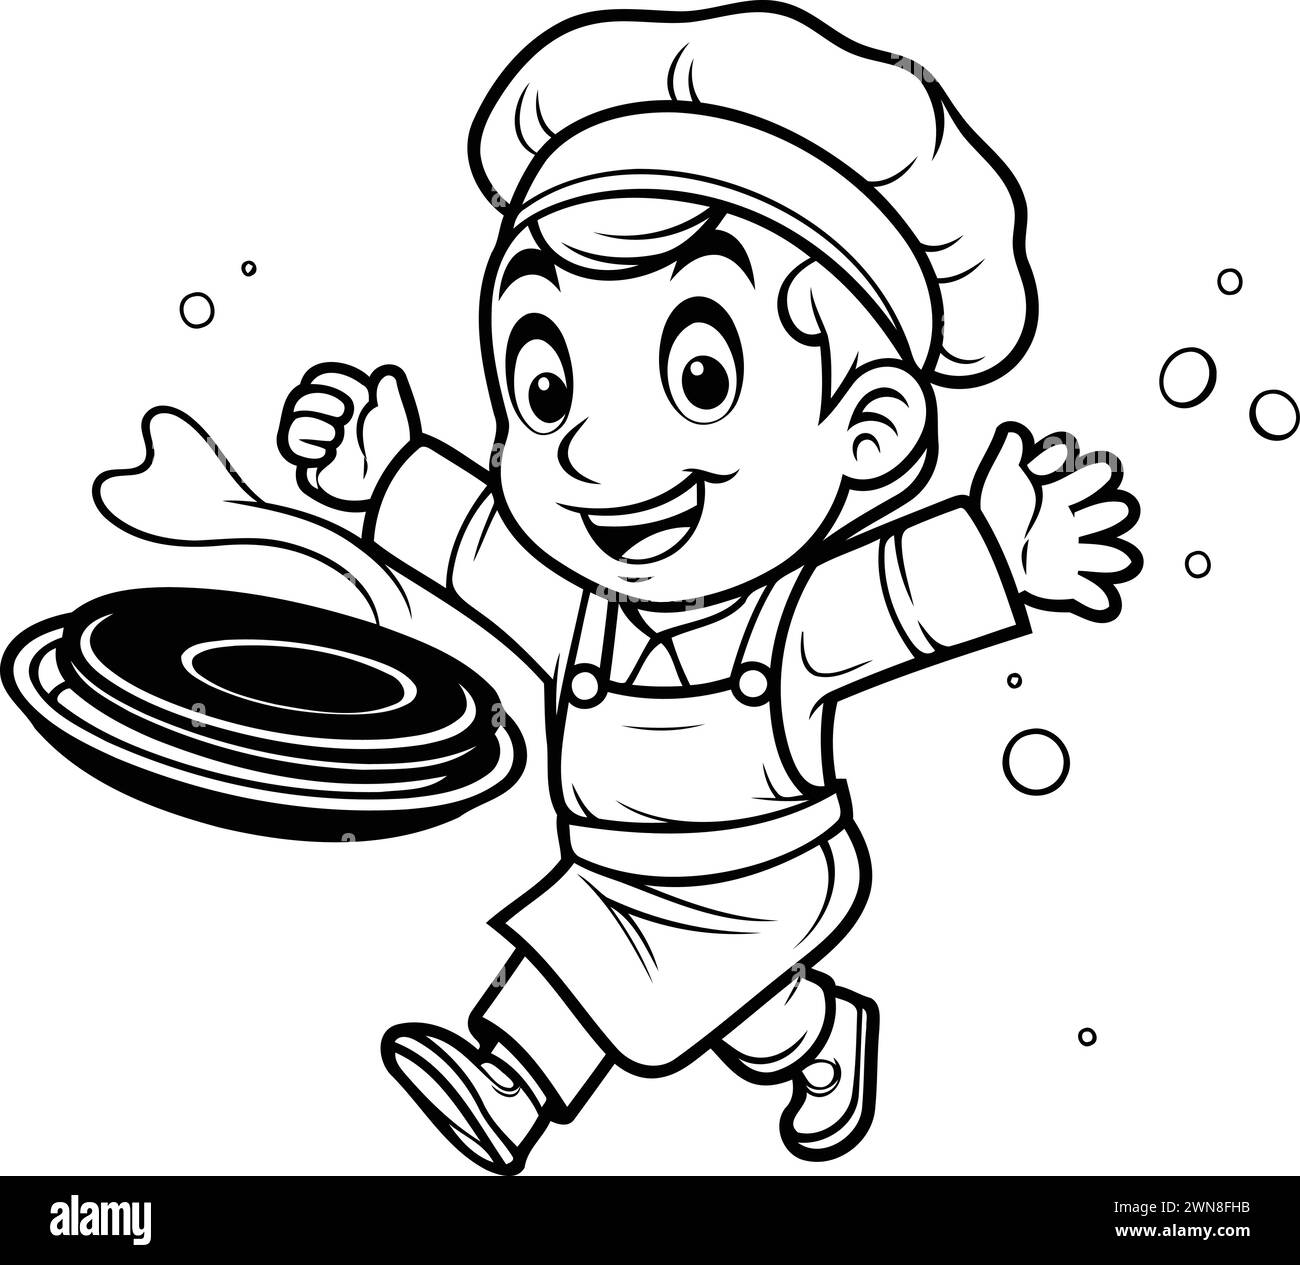 Dessin animé noir et blanc illustration d'un personnage de chef de garçon enfant portant un costume de cuisinier tenant une casserole Illustration de Vecteur